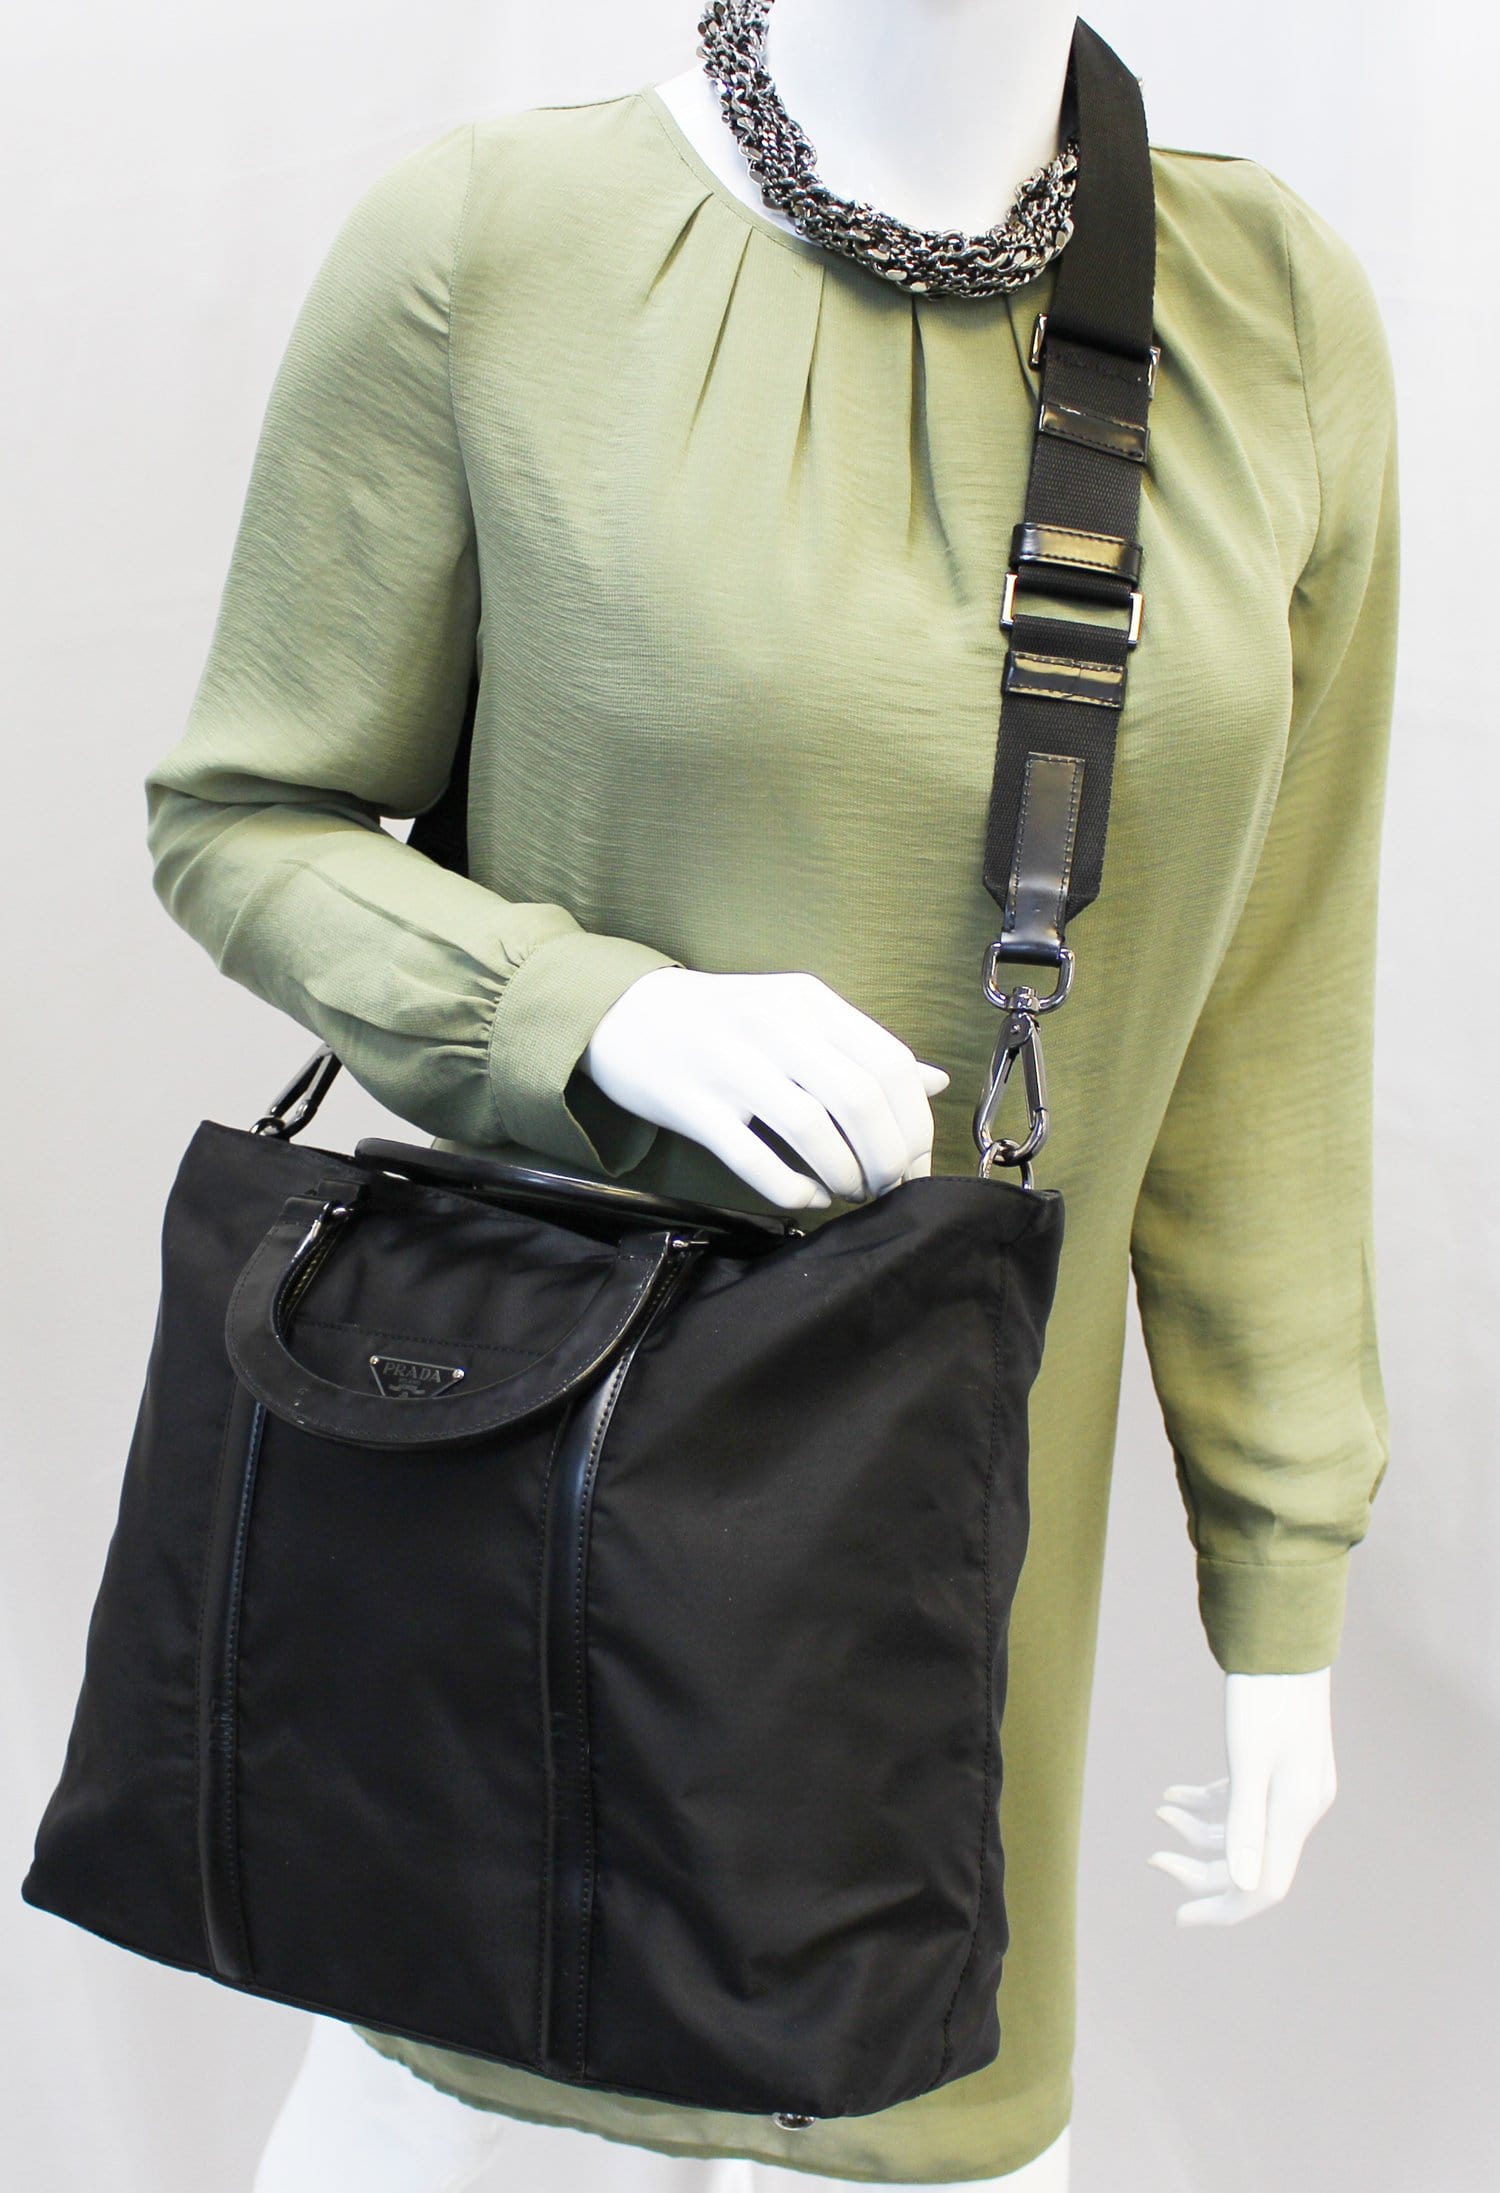 PRADA Black Tessuto Nylon and Saffiano Leather Crossbody Bag E4111